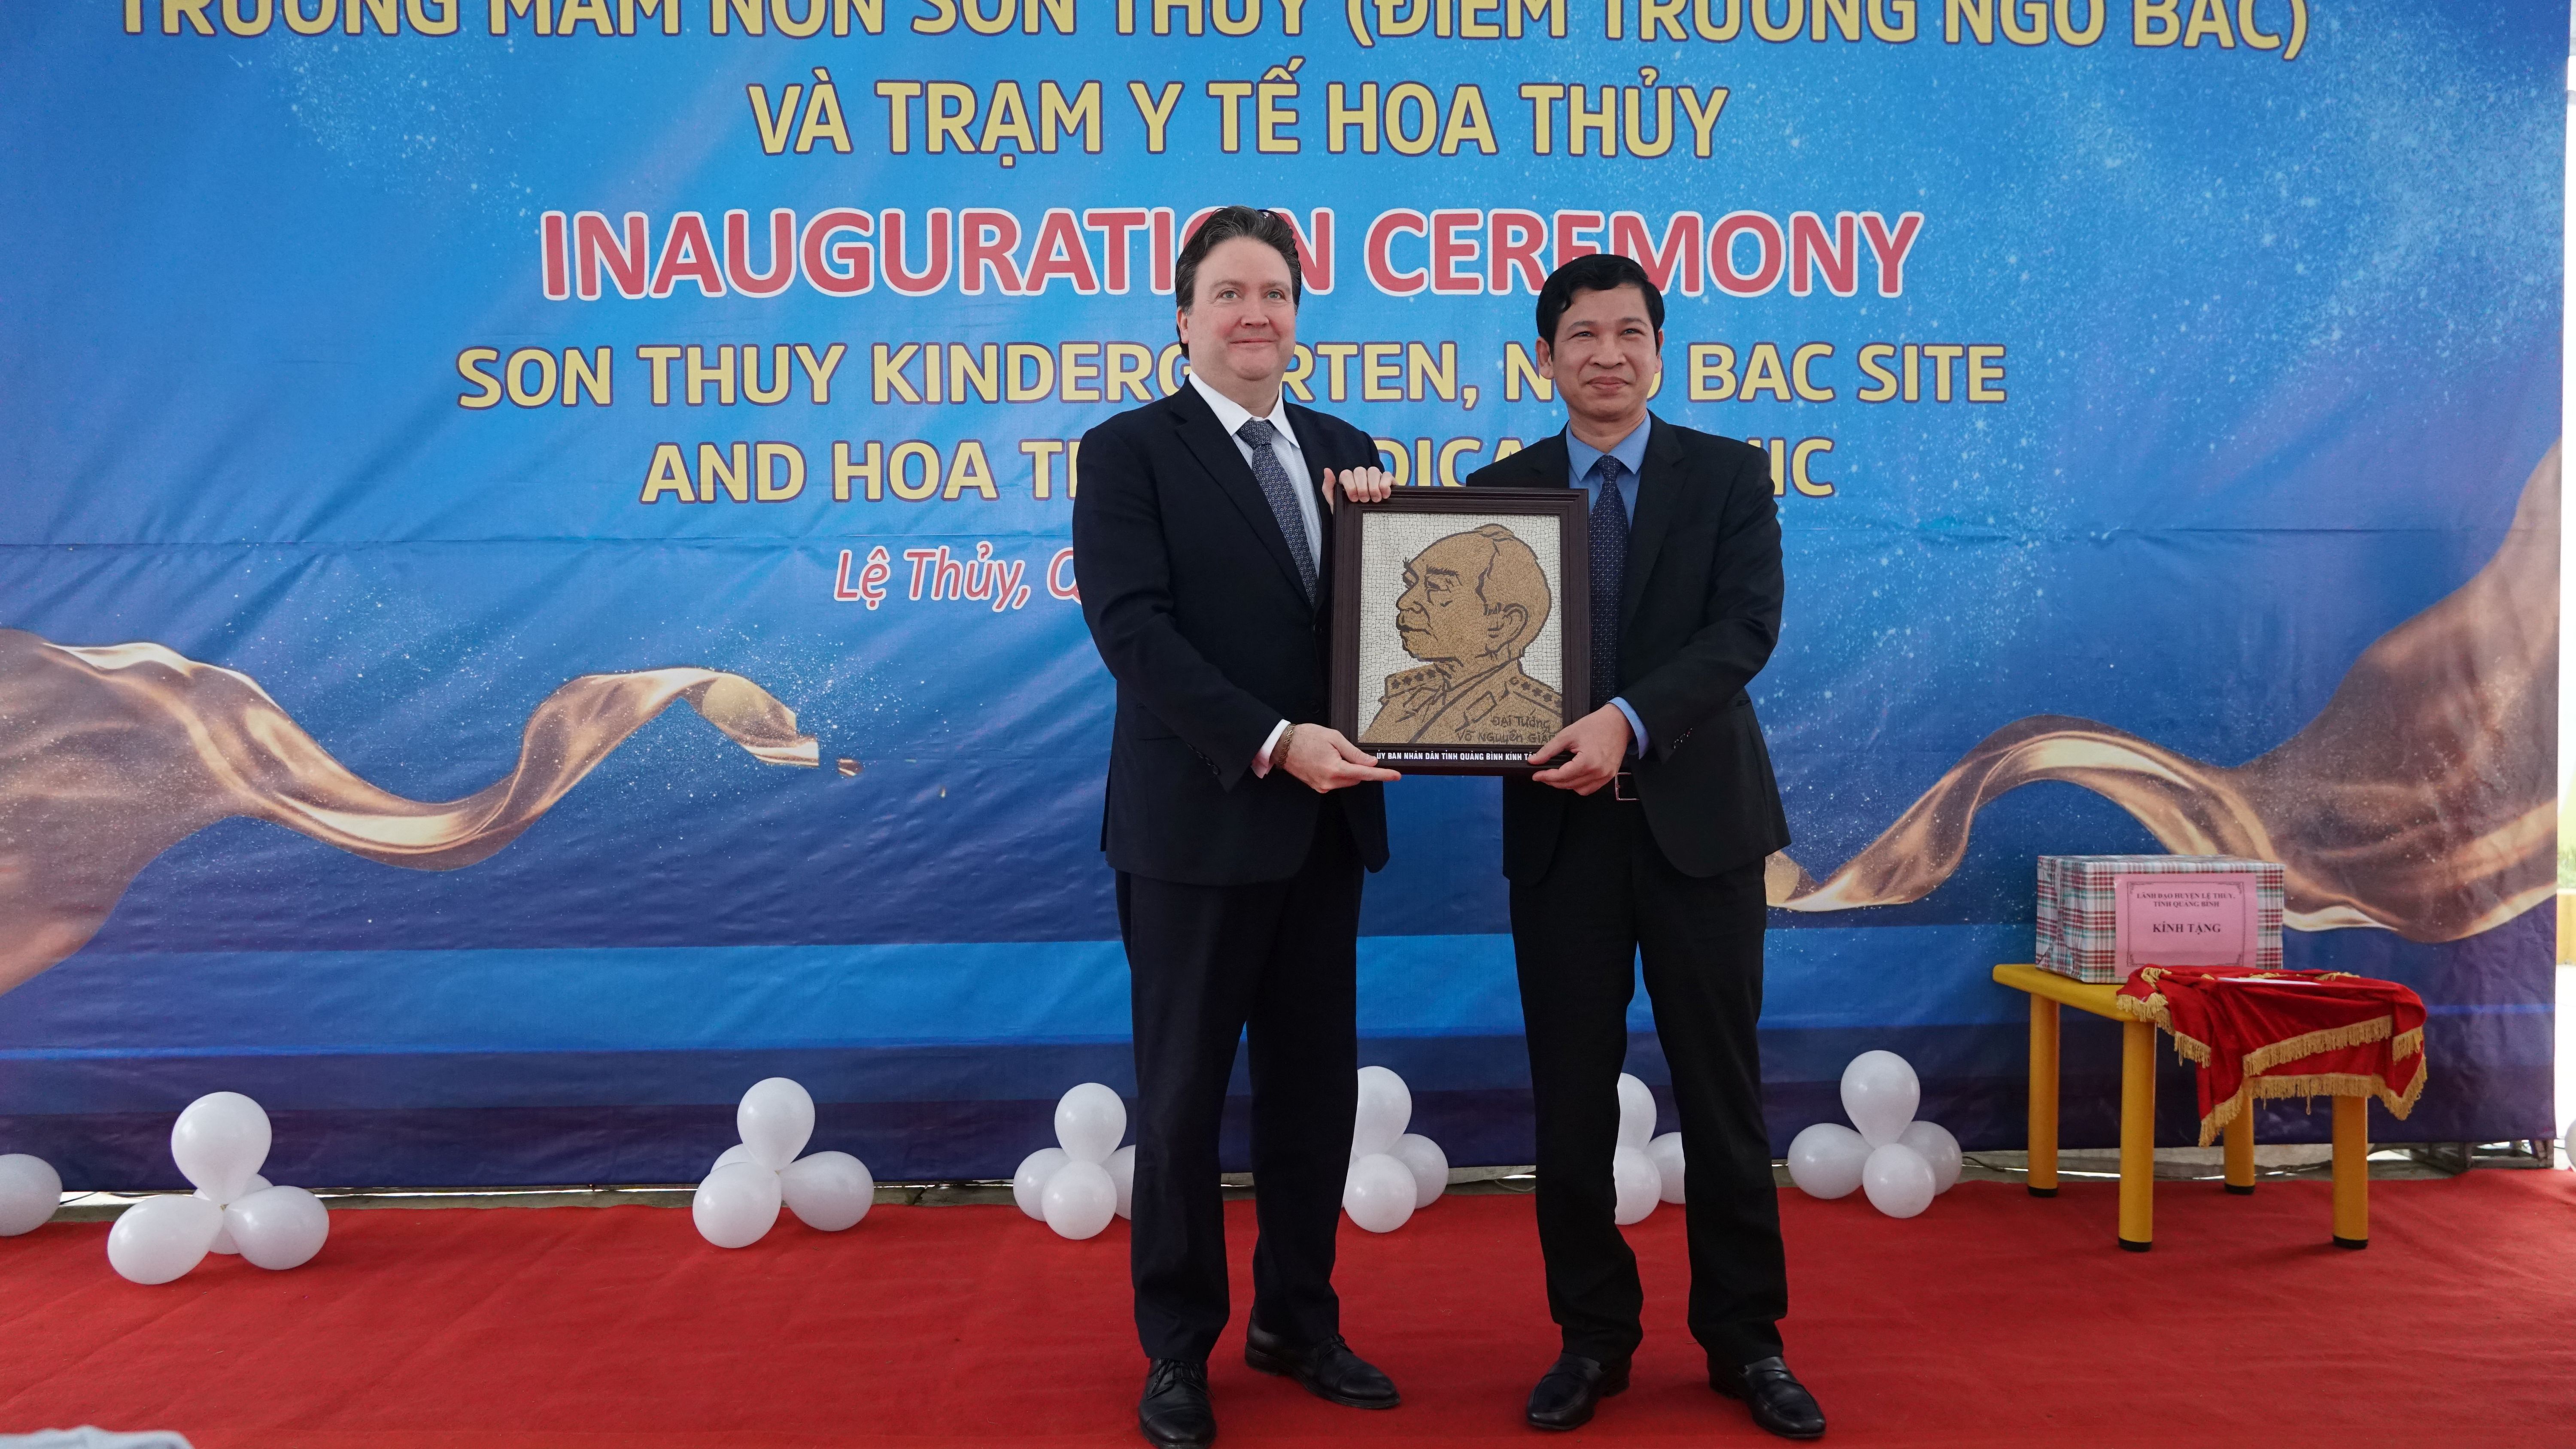 Đồng chí Phó Chủ tịch UBND tỉnh Hồ An Phong tặng bức tranh bằng gạo cho ngài đại sứ.